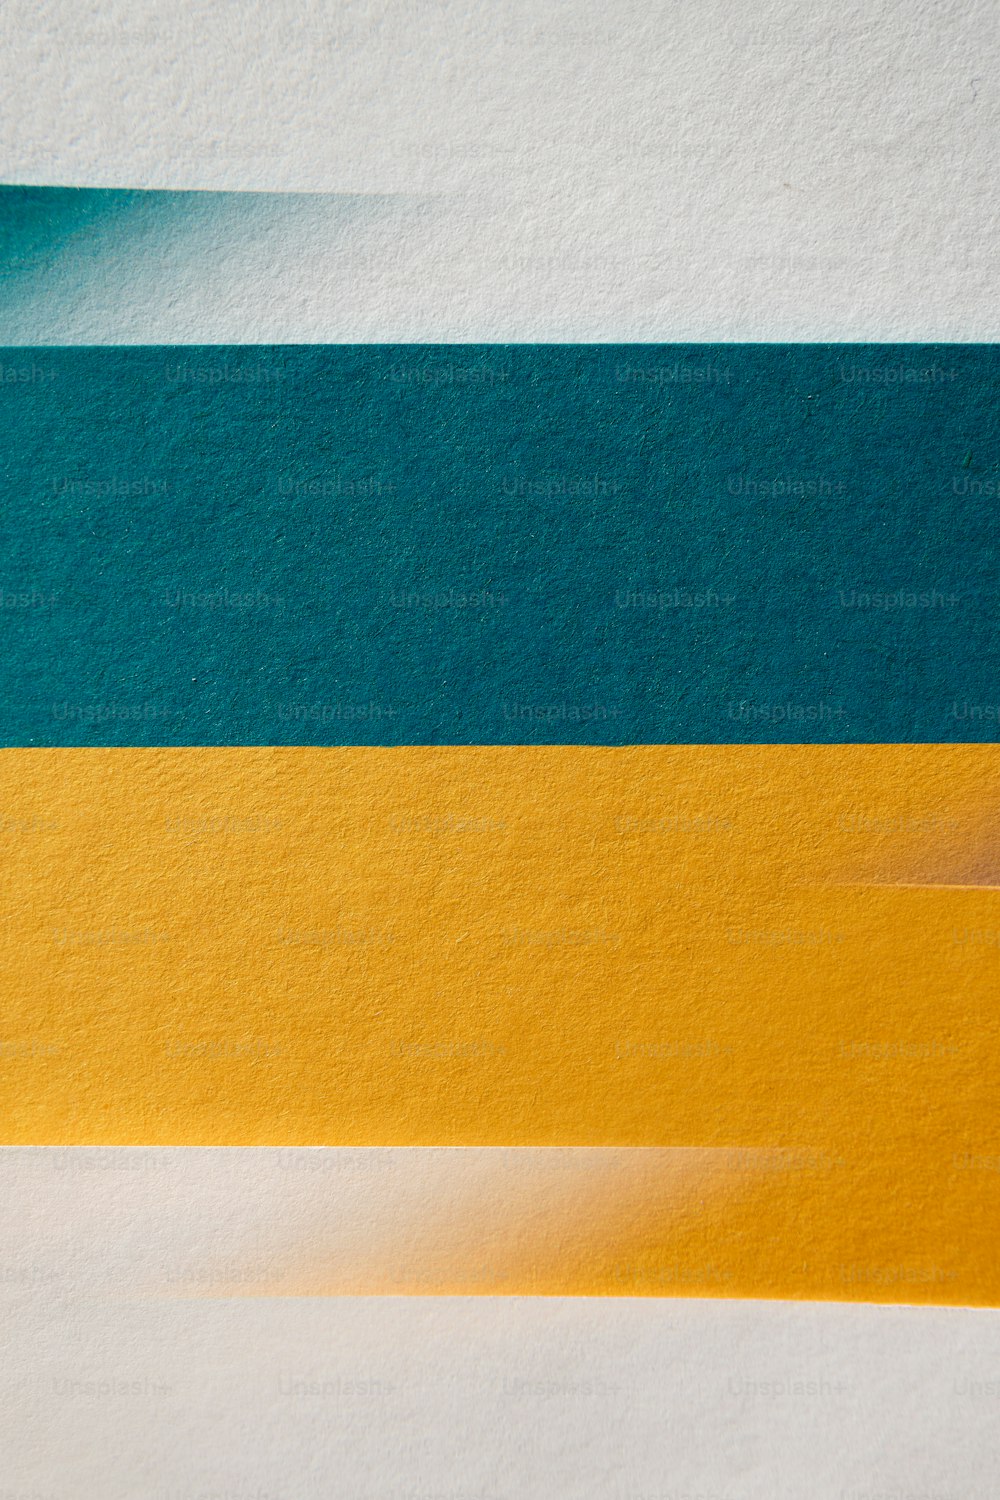 Un primer plano de un pedazo de papel con tiras amarillas y azules